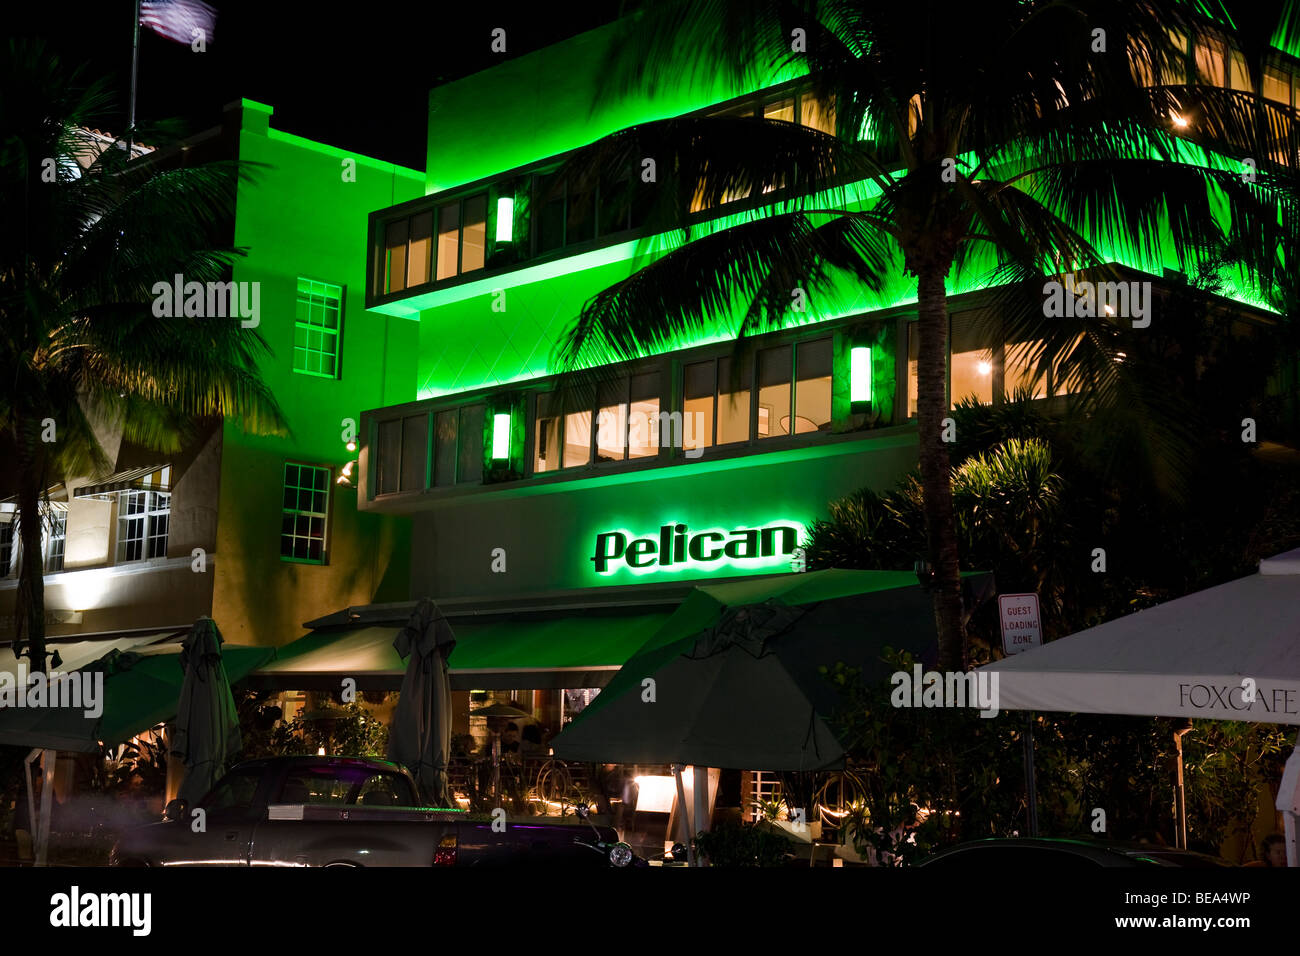 L'hôtel Pelican éclairés la nuit dans le néon. Quartier art déco de South Beach Miami Florida USA Banque D'Images